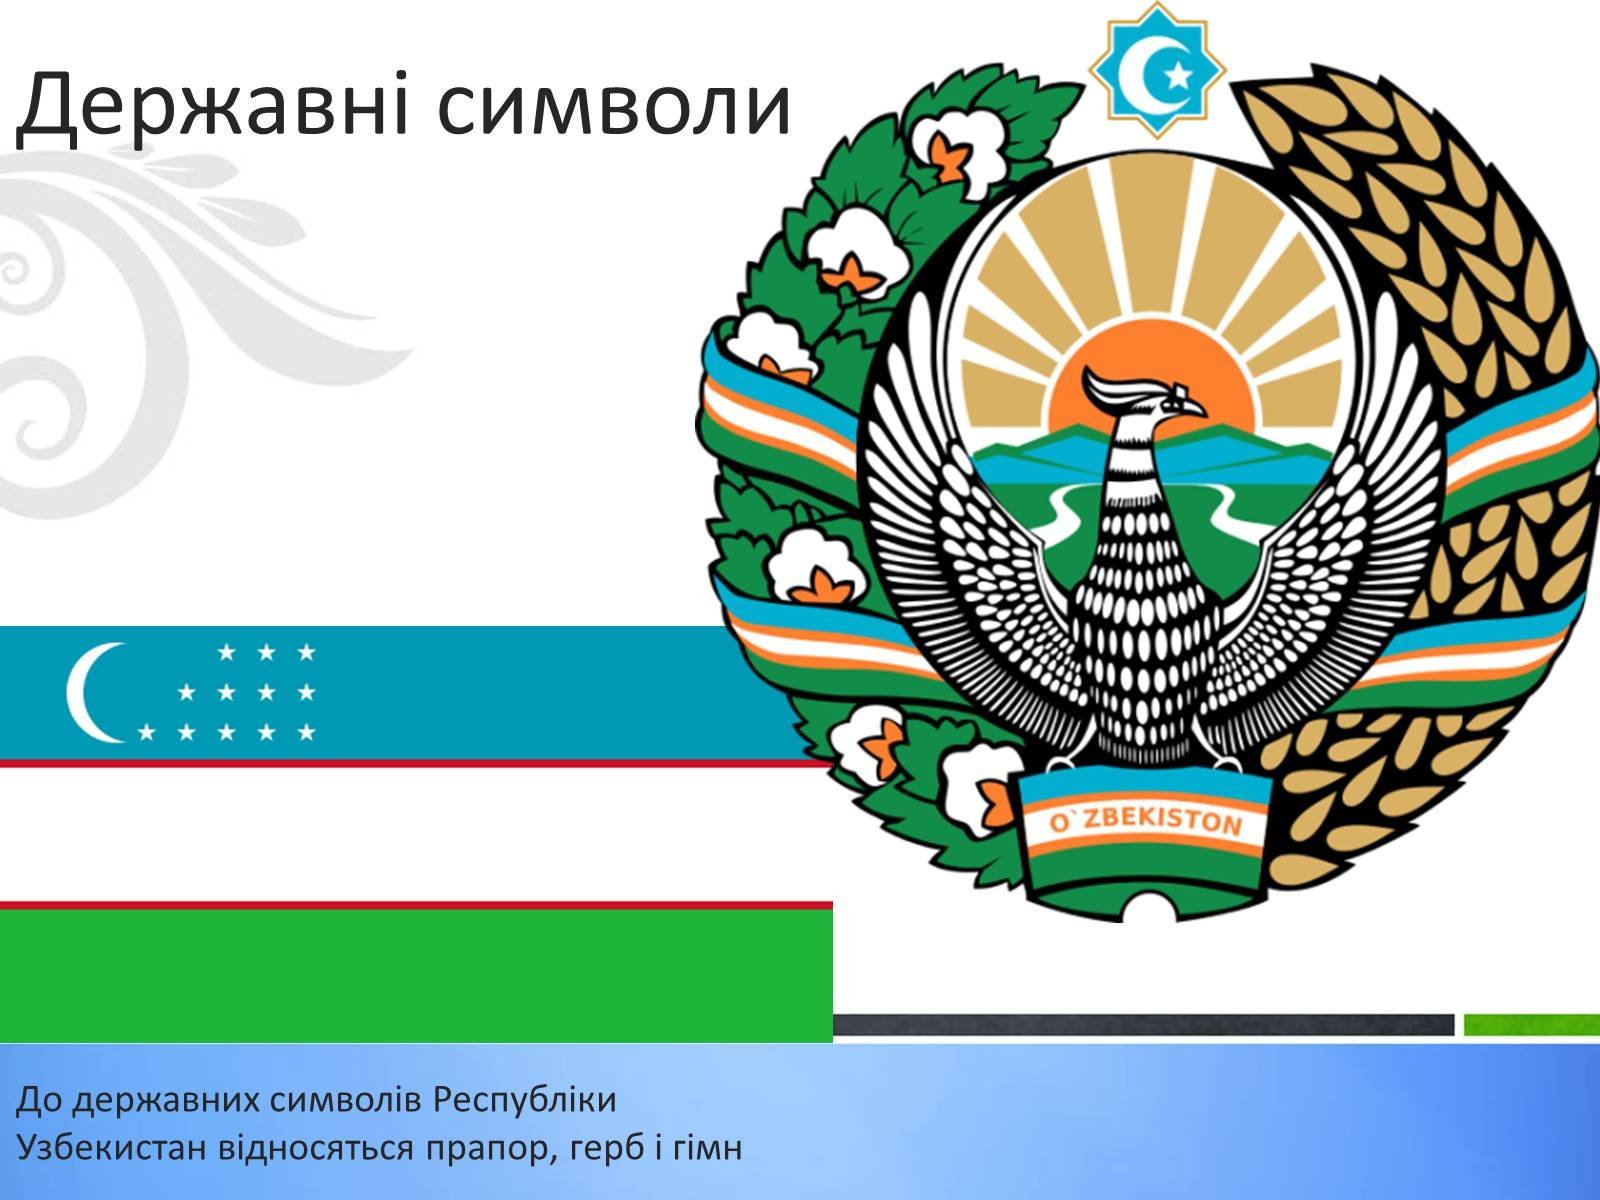 Uzbekistan Flag Изображения – скачать бесплатно на Freepik